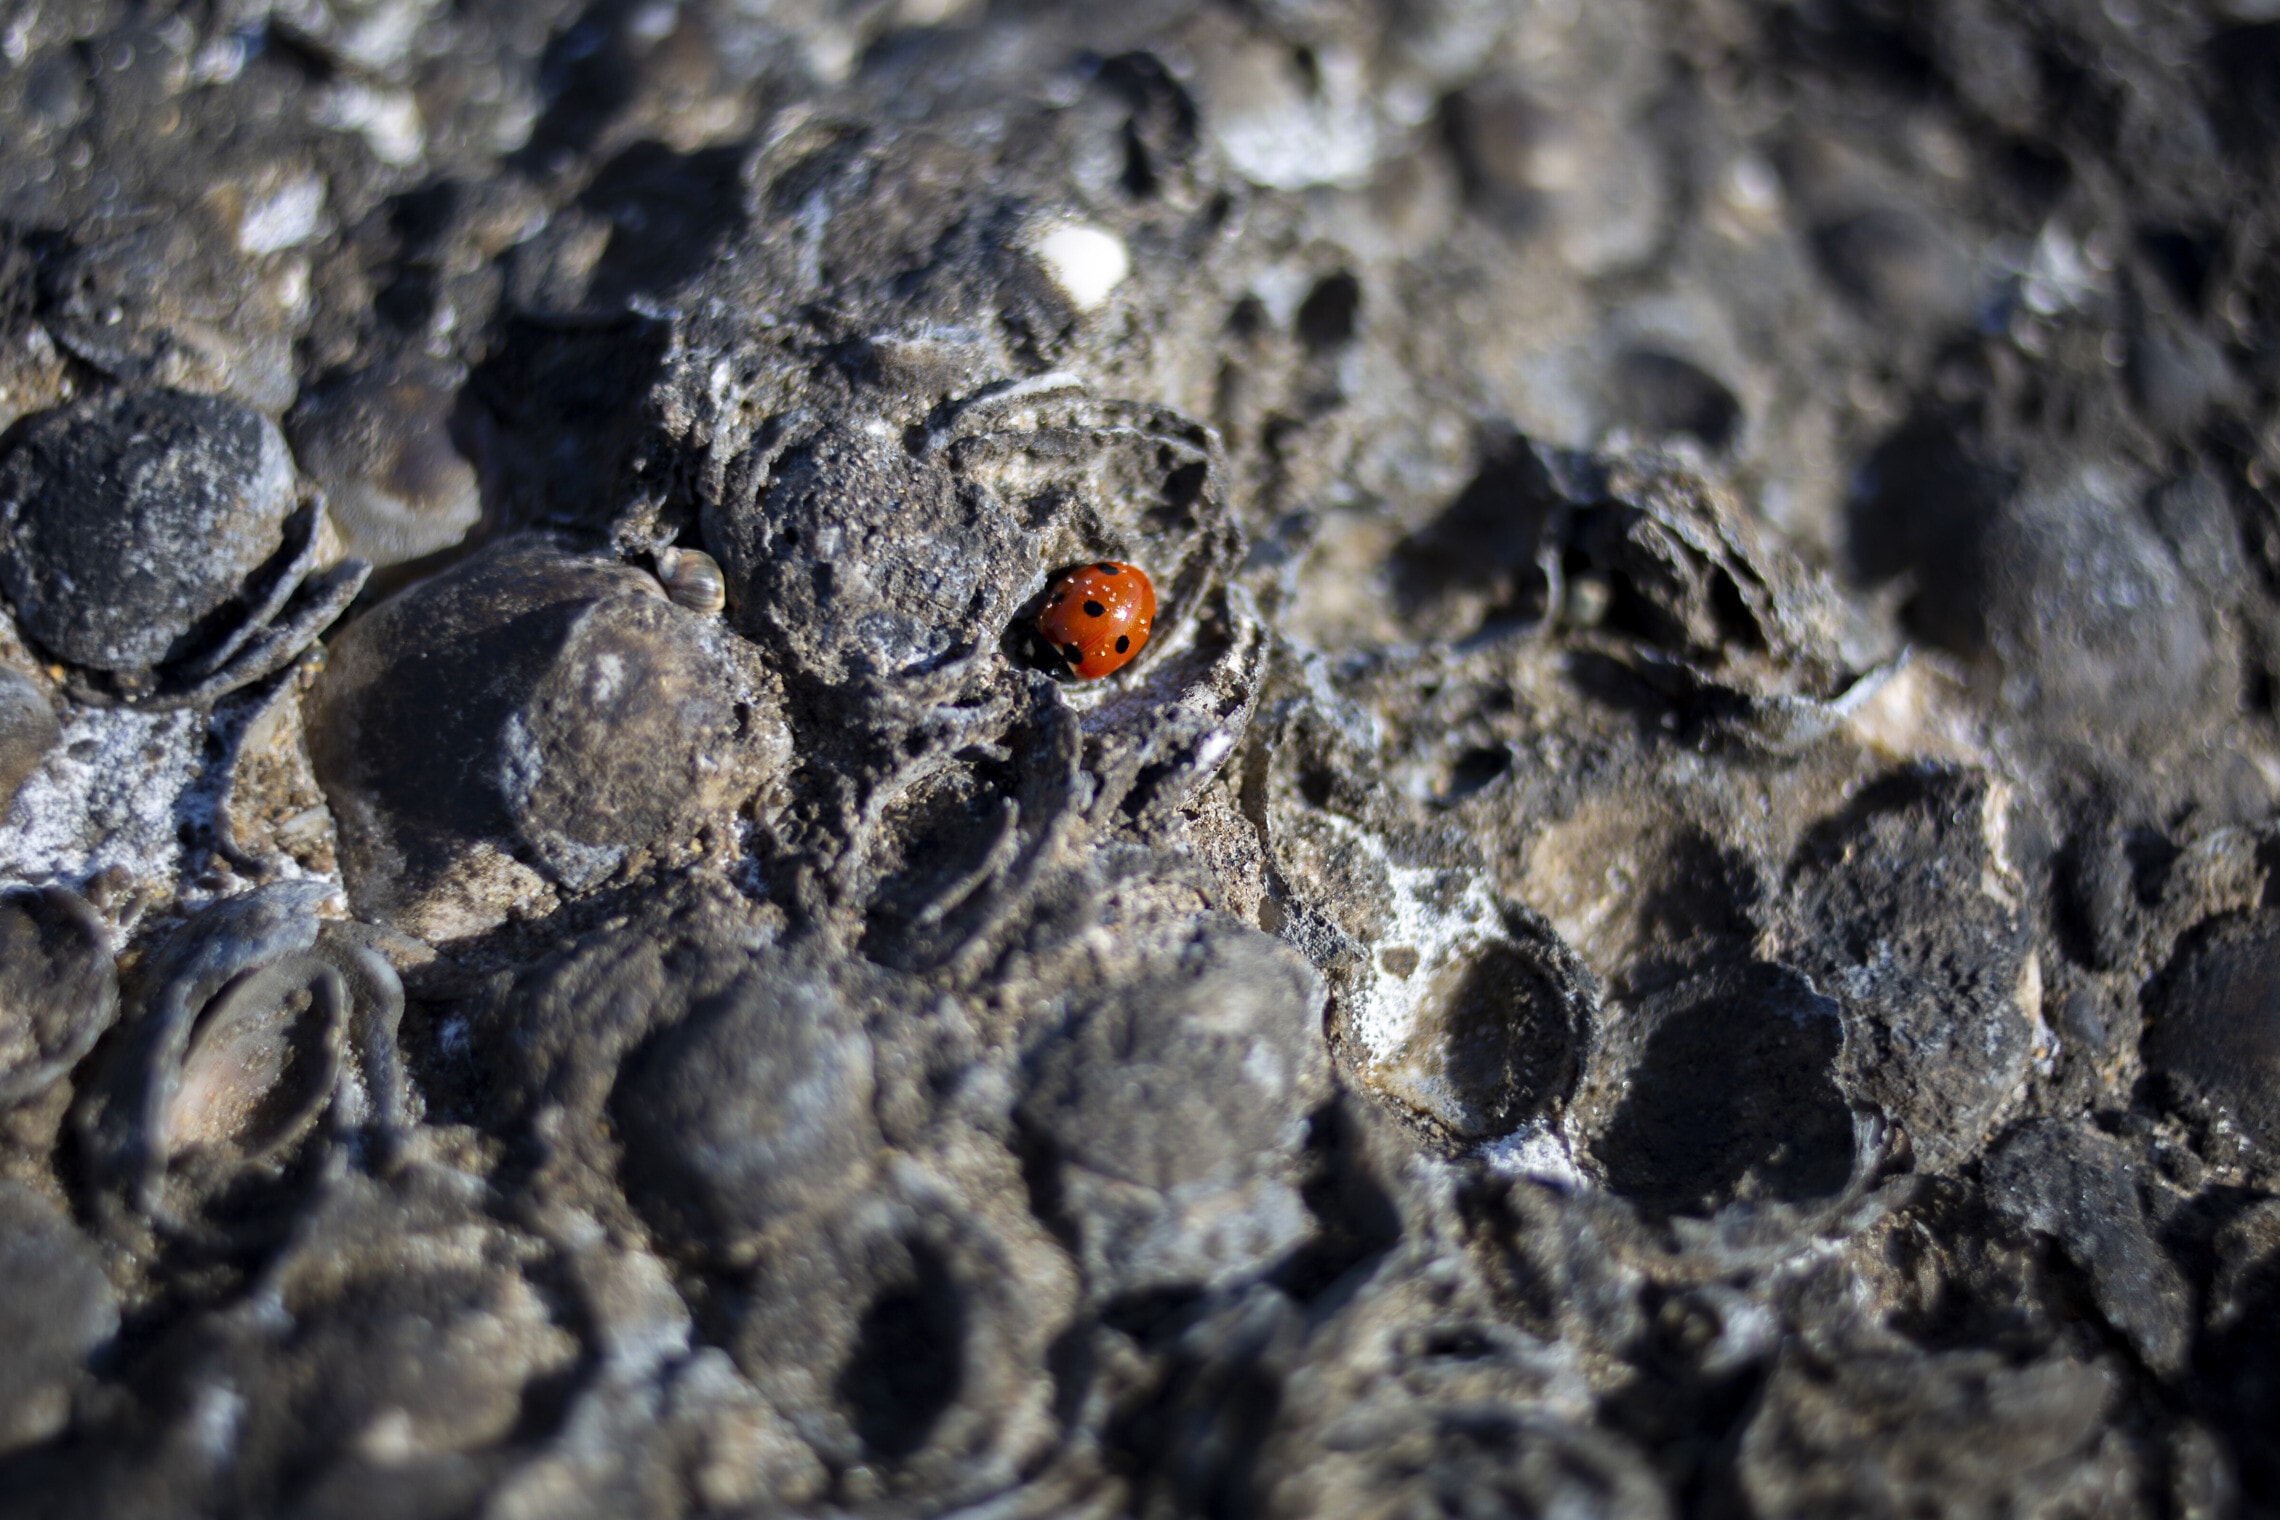 חיפושית על סלעים מכוסים בזפת, 23 בפברואר 2021 (צילום: AP Photo/Ariel Schalit)